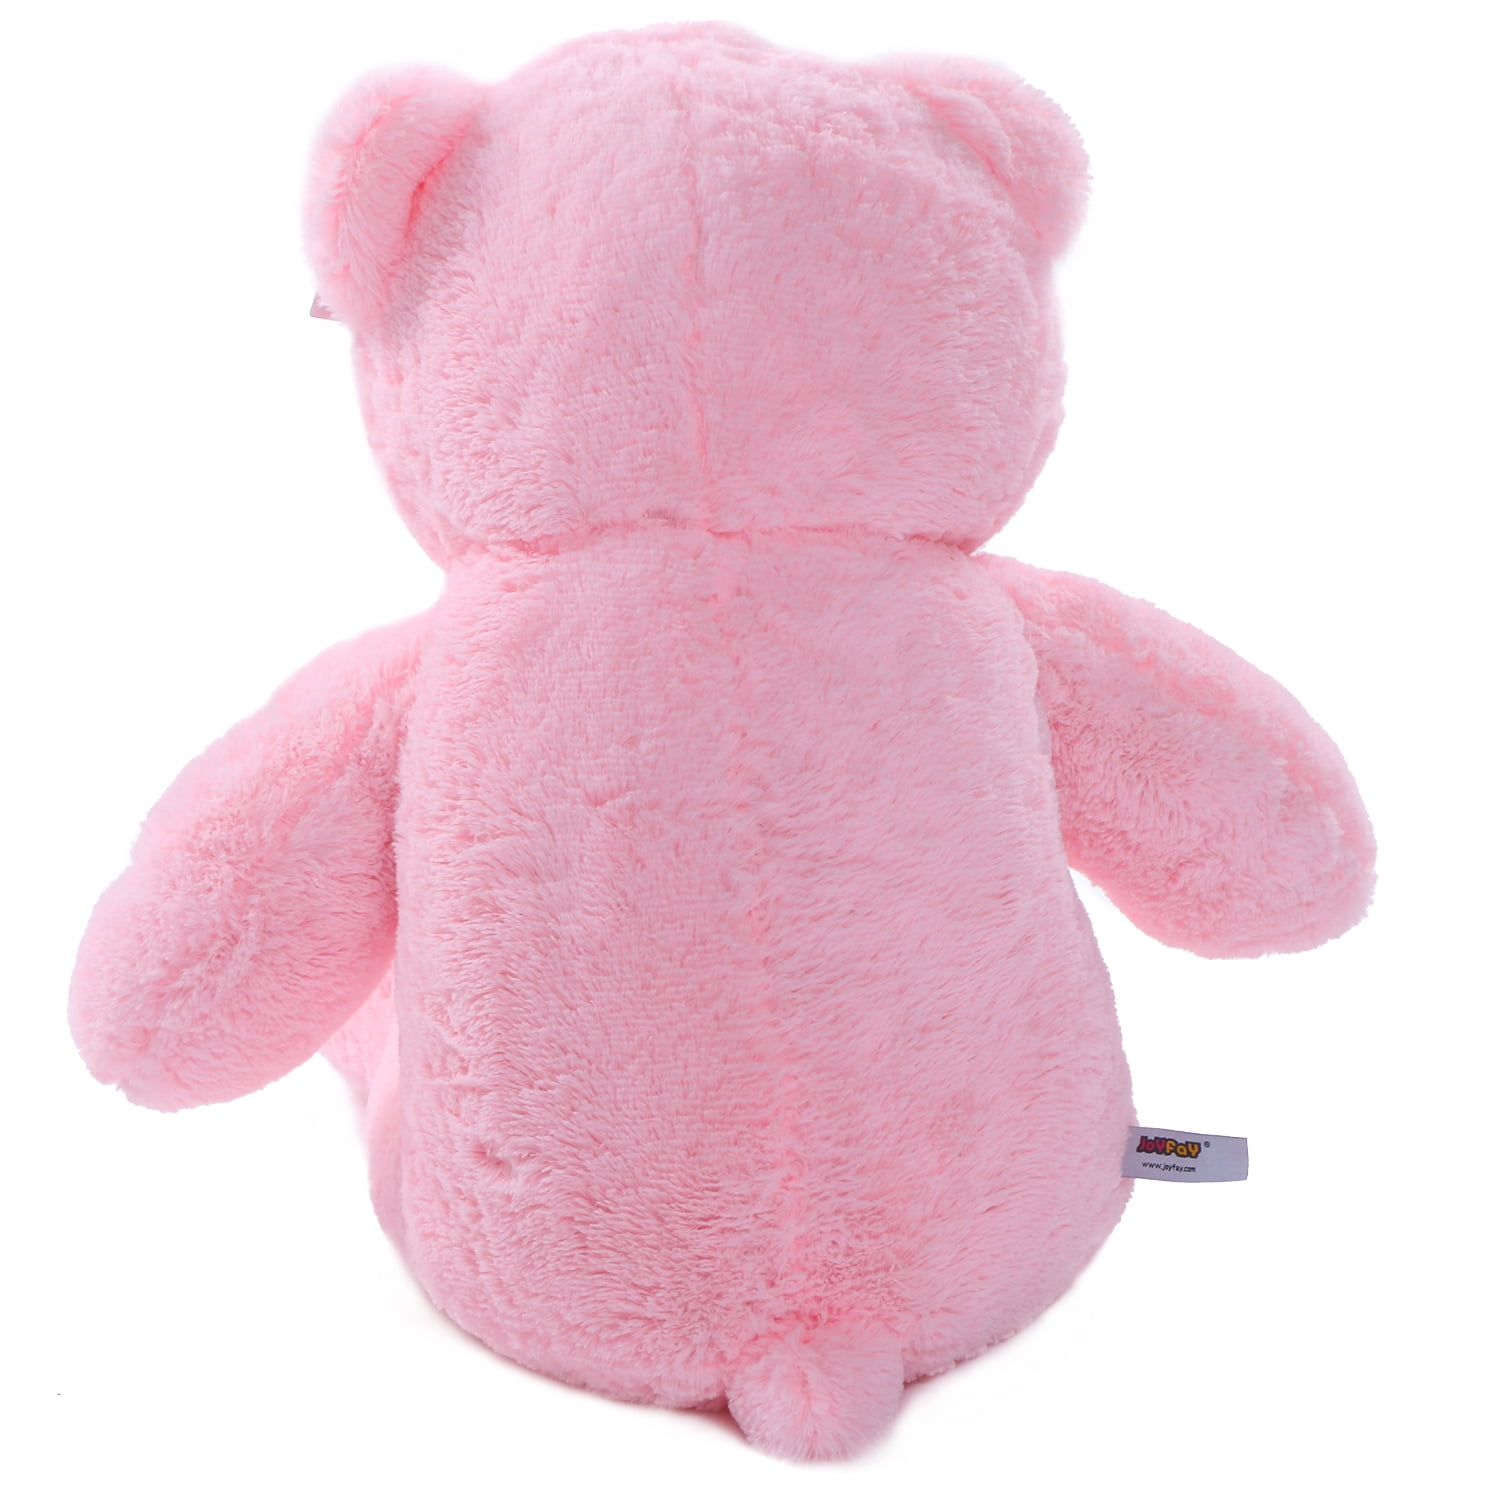 Joyfay Giant Teddy Bear - Pink - 91”